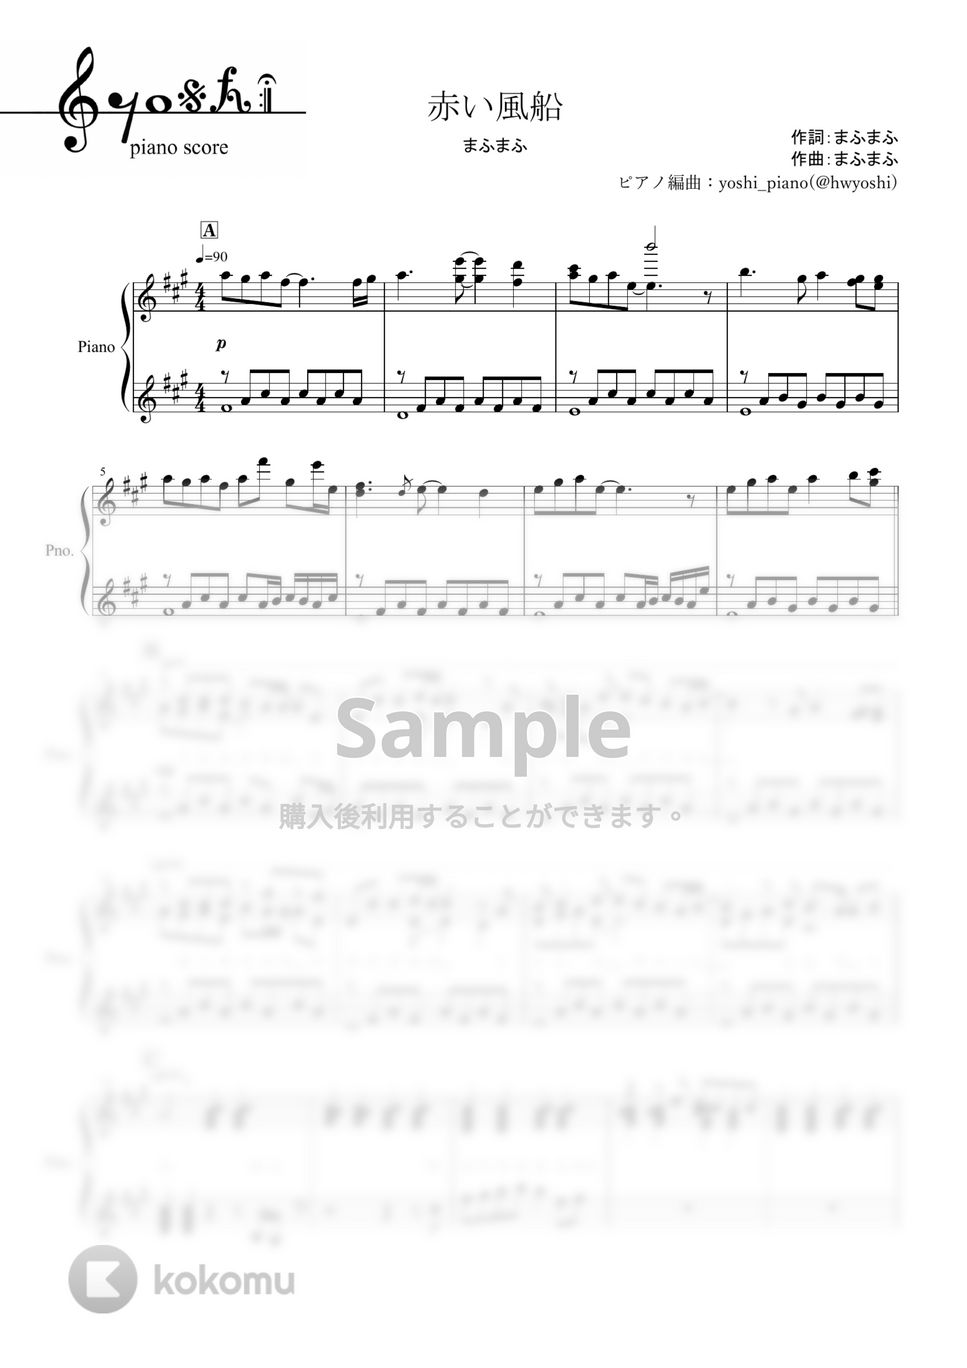 まふまふ - 赤い風船 (ピアノ楽譜/全５ページ) by yoshi